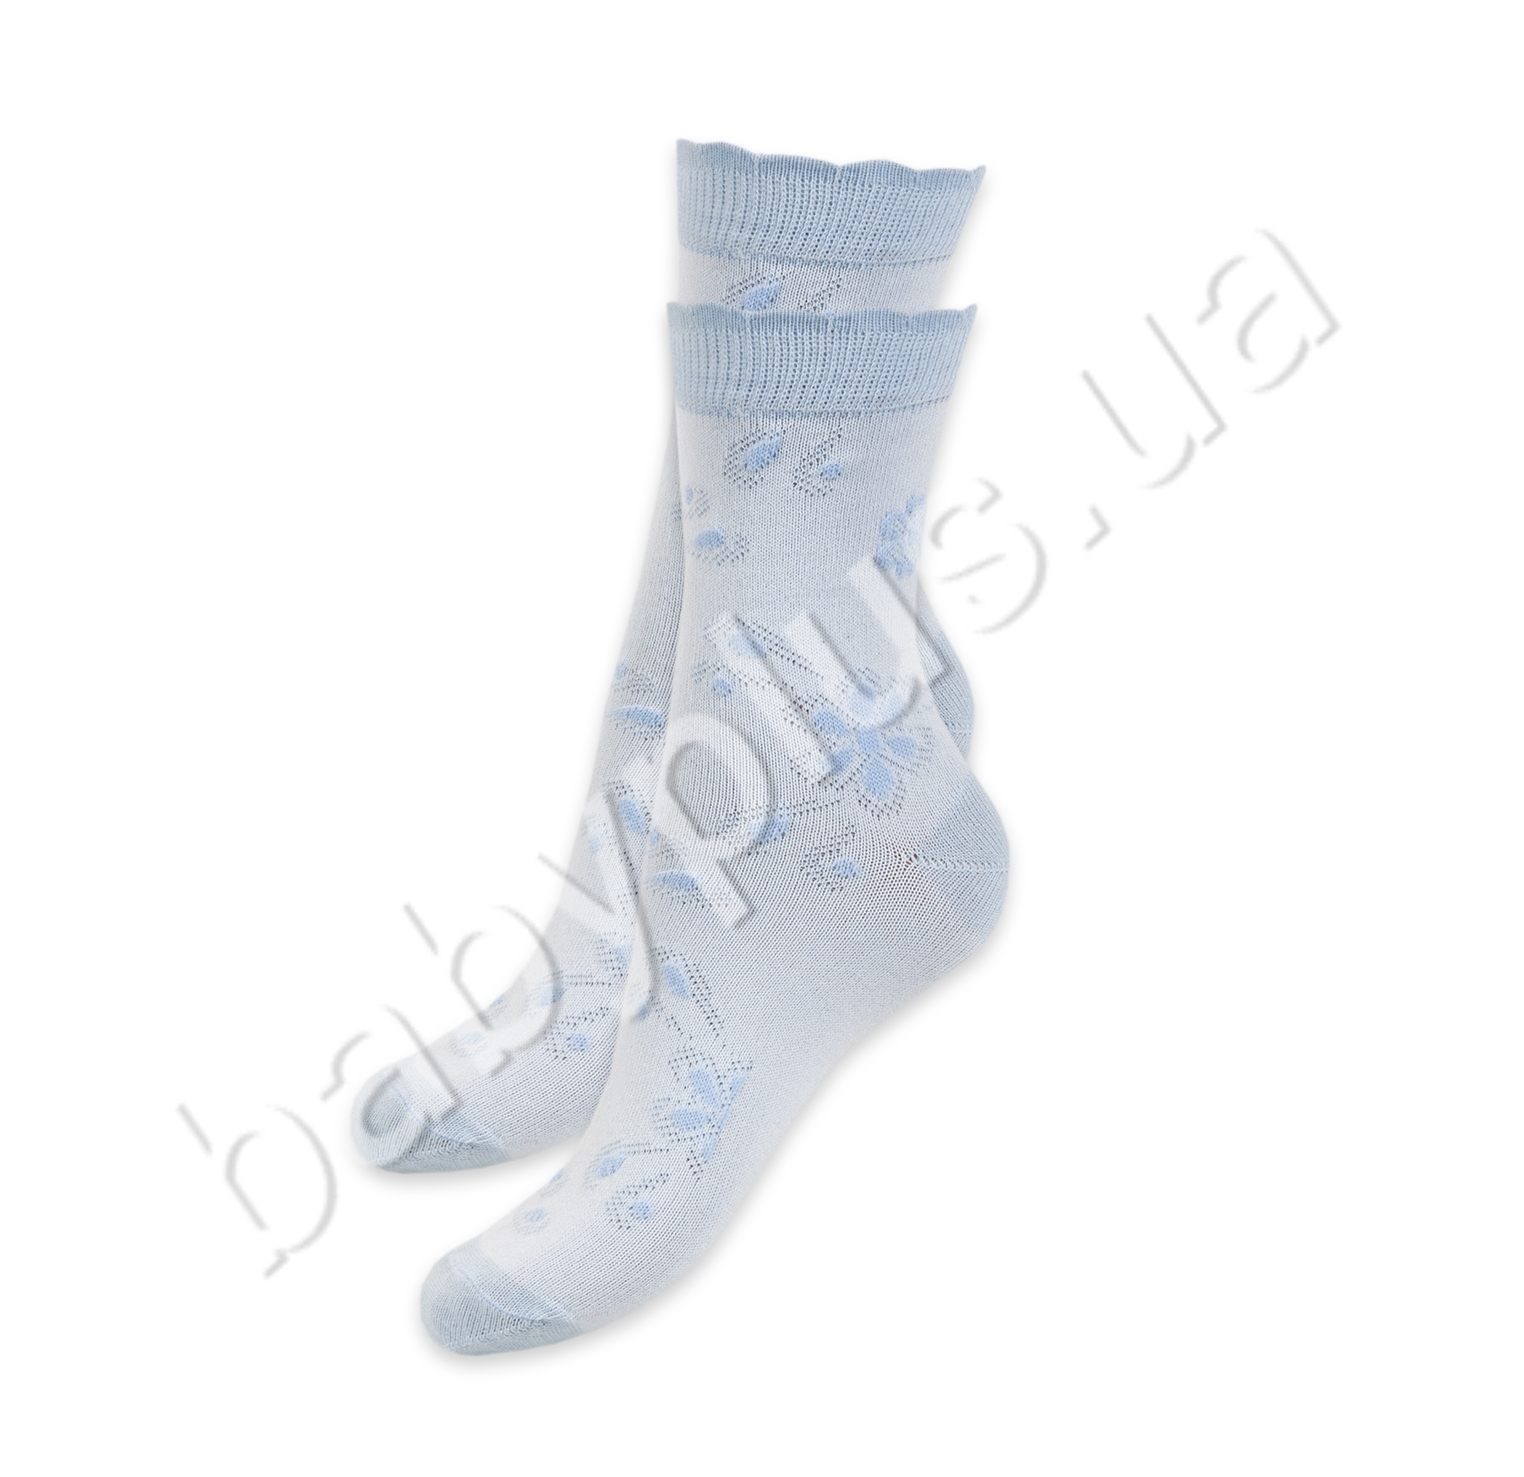 Шкарпетки, розмір 20-22, демісезонні блакитні. Гладкі з ажурним ефектом. ТМ Duna